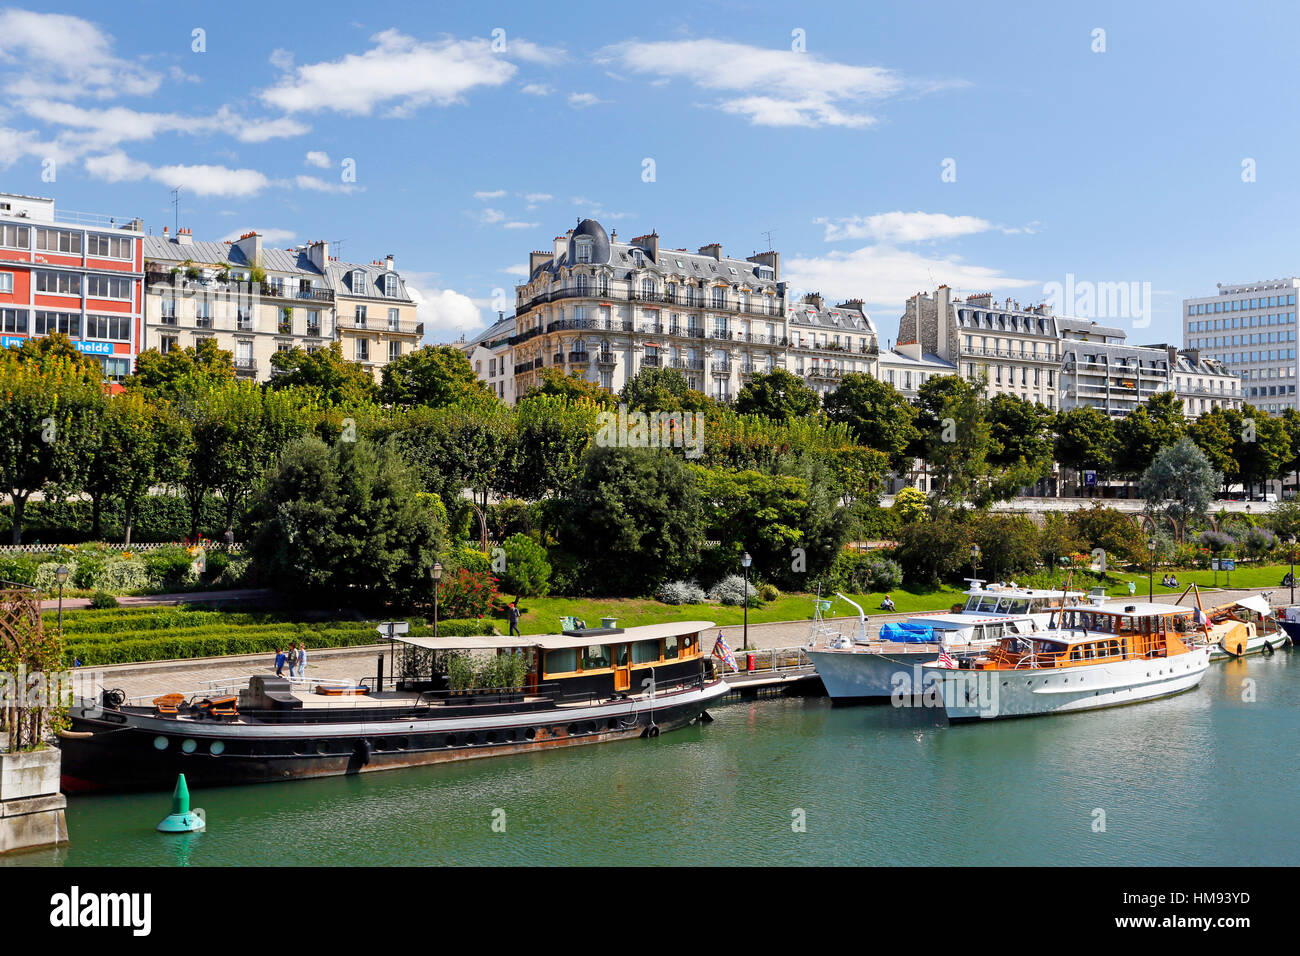 France, Paris, 4th arrondissement, Port de l'Arsenal. Stock Photo